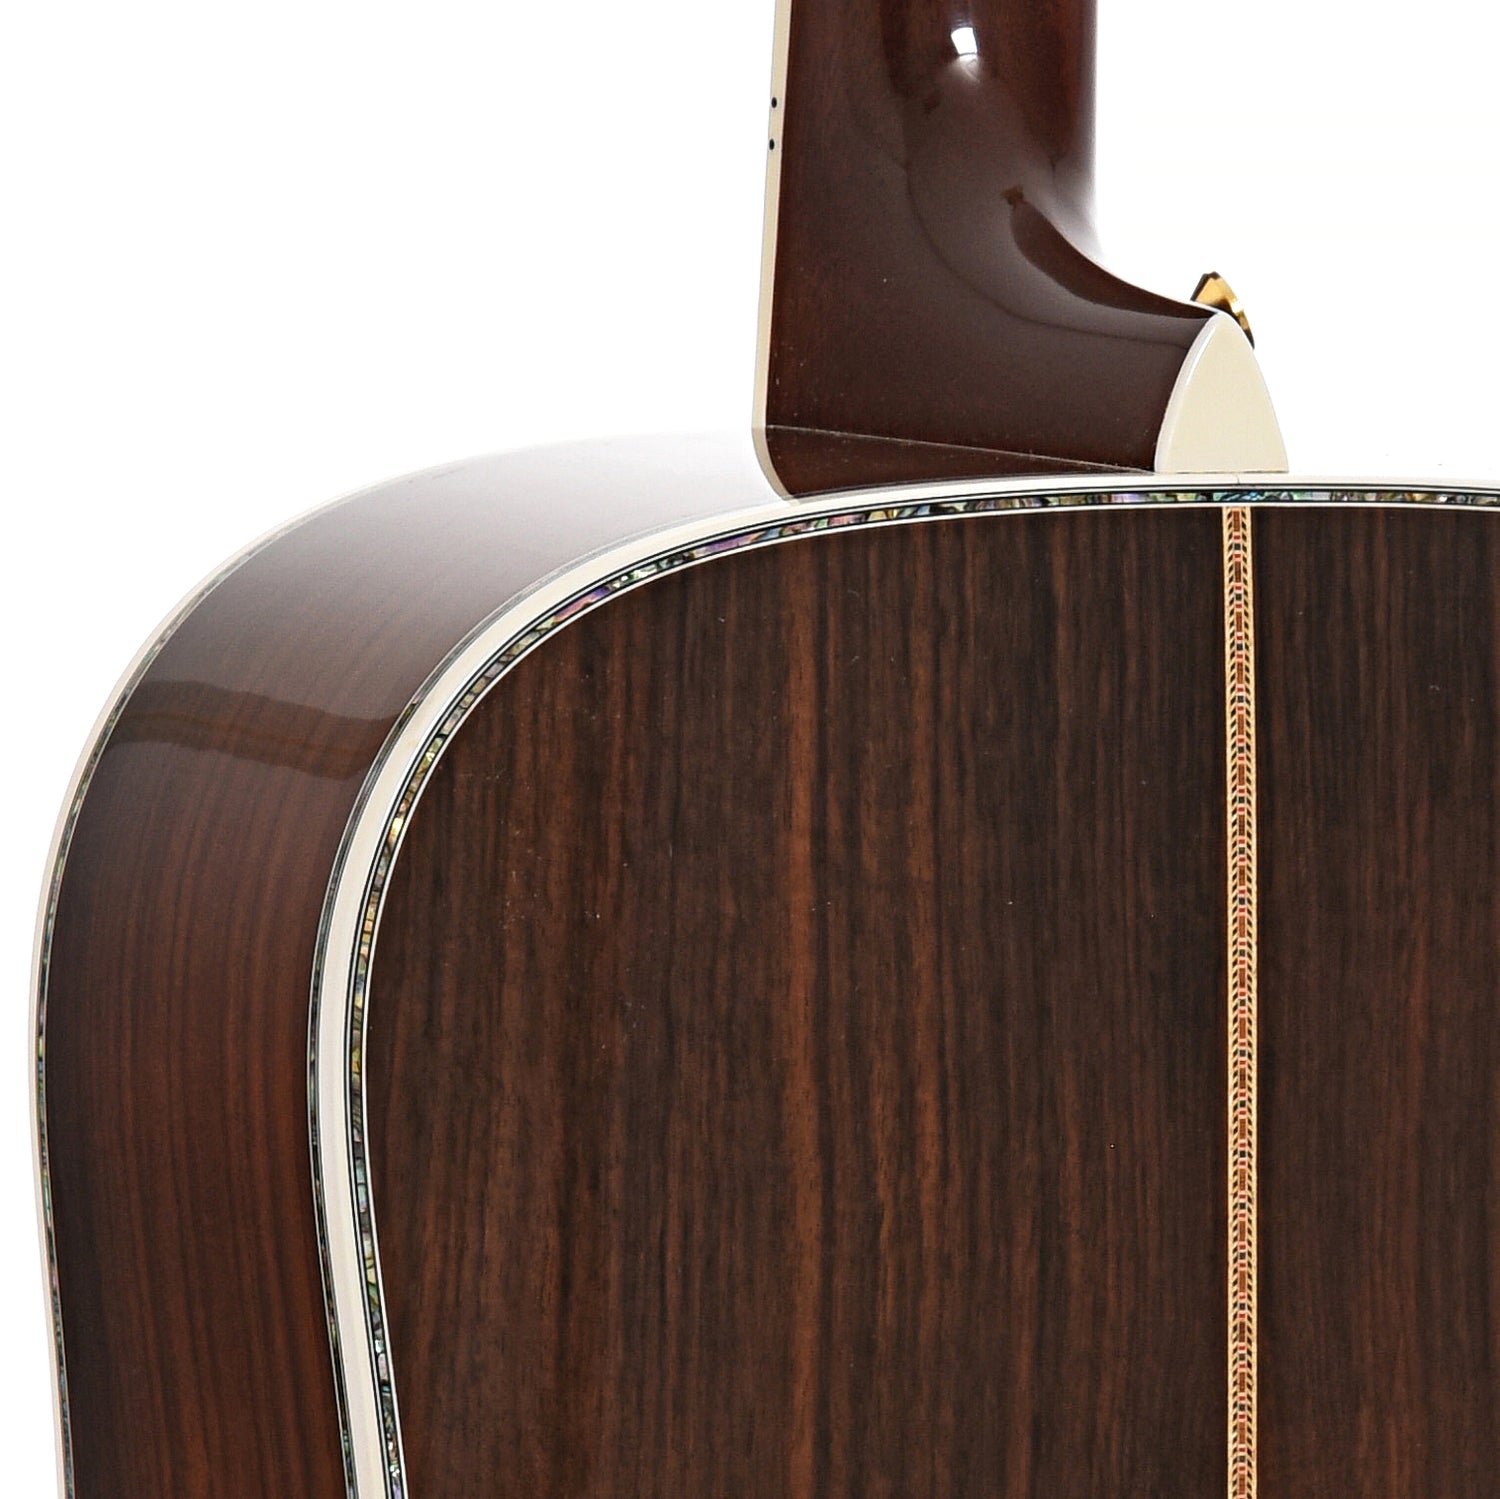 Heel of Martin D-45L Acoustic Guitar